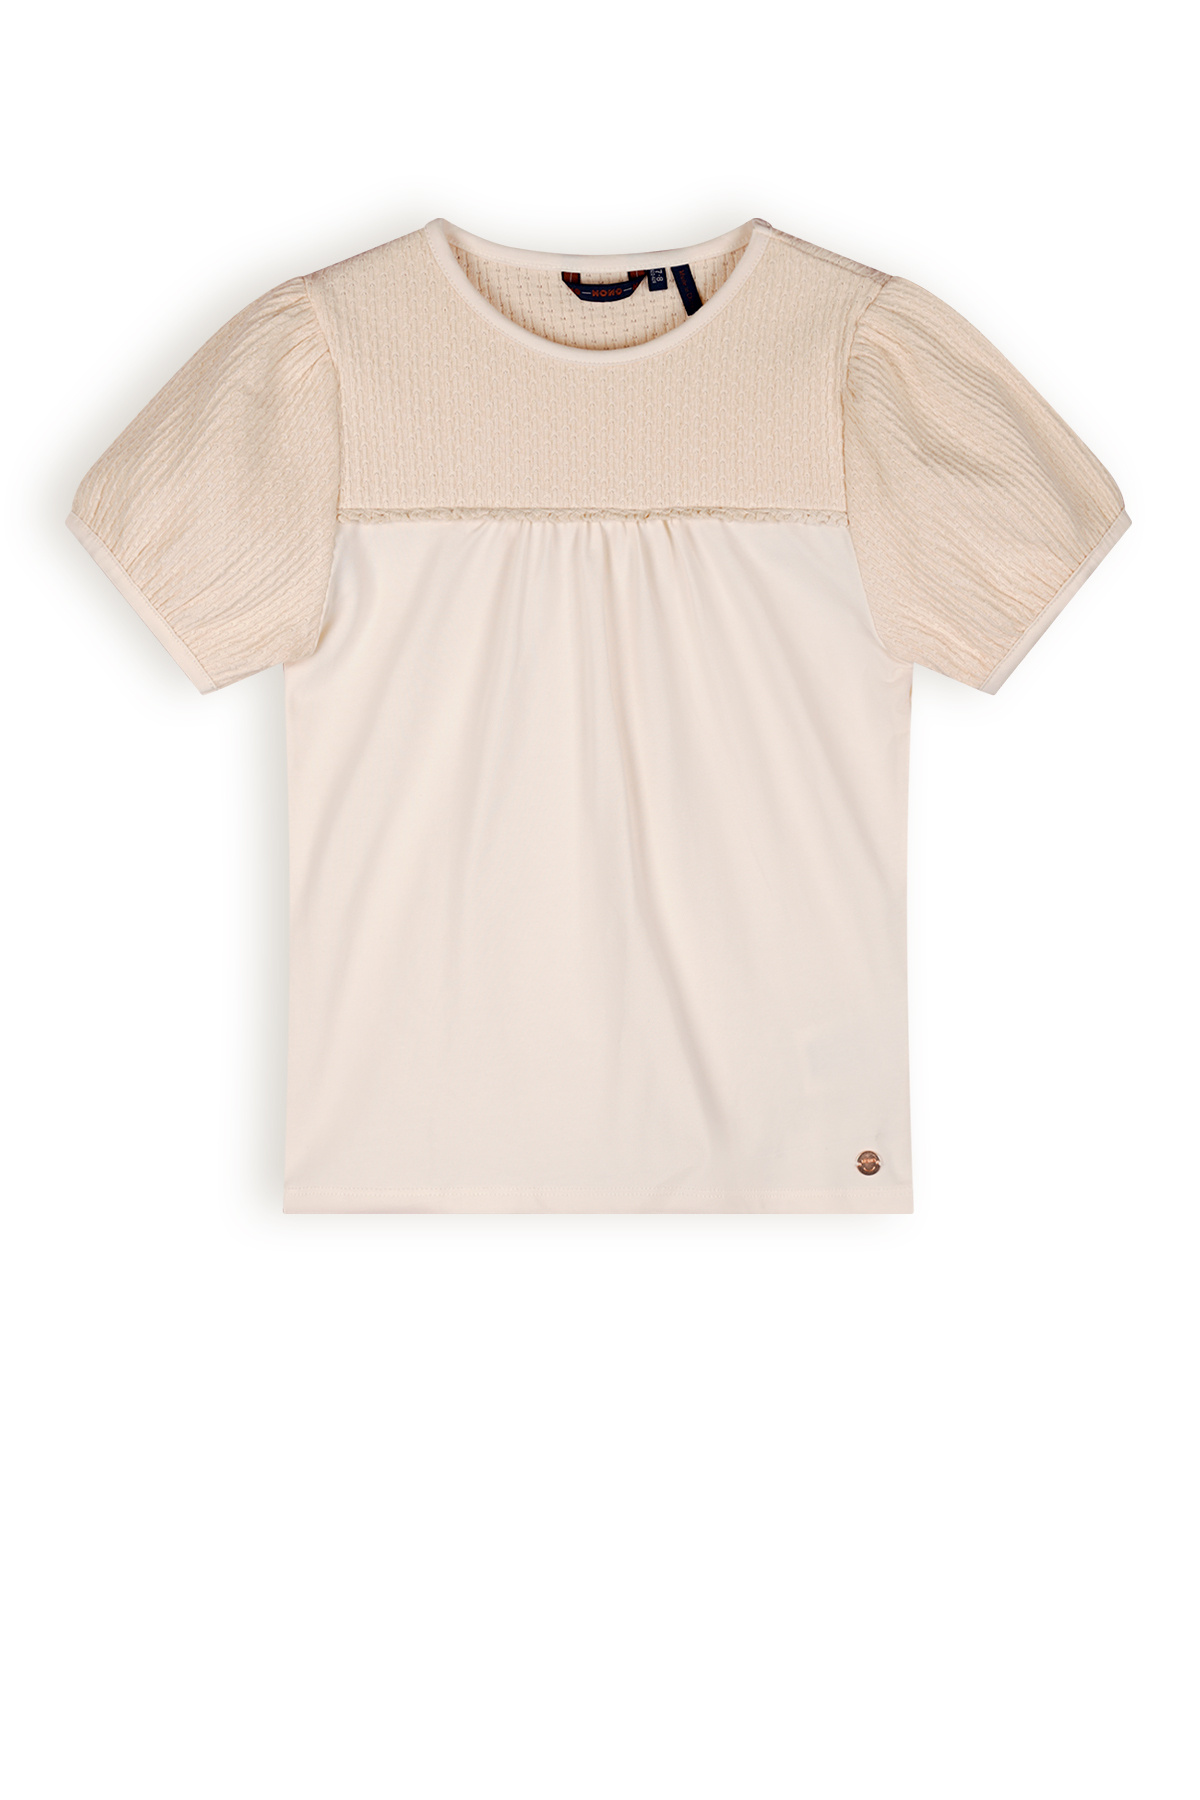 NoNo Meisjes t-shirt met puffy mouw - Karen - Pearled ivoor wit